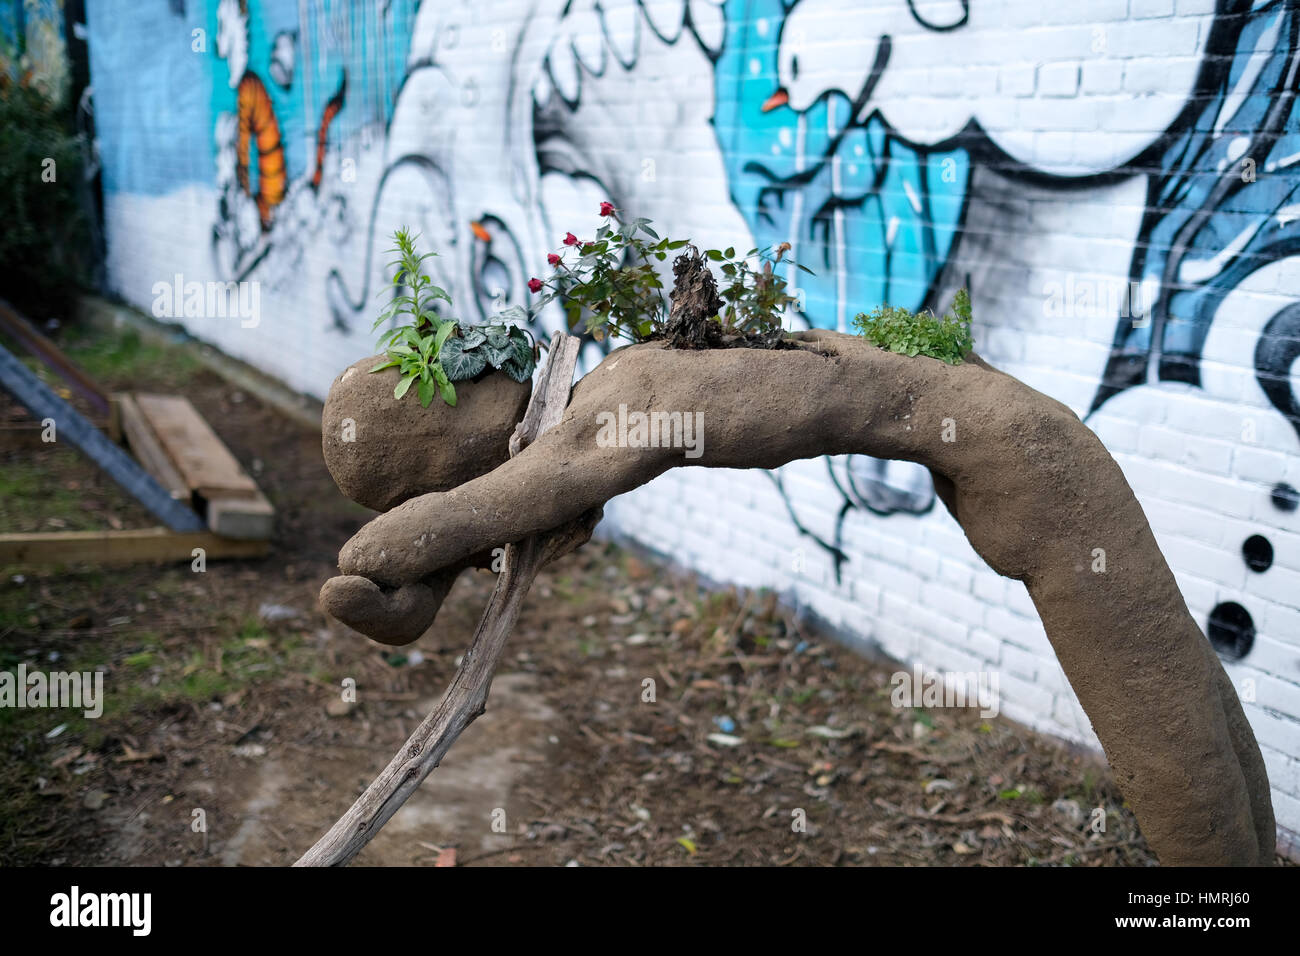 Sculpture créative sous la forme d'un corps humain utilisé comme récipient de fleurs Banque D'Images